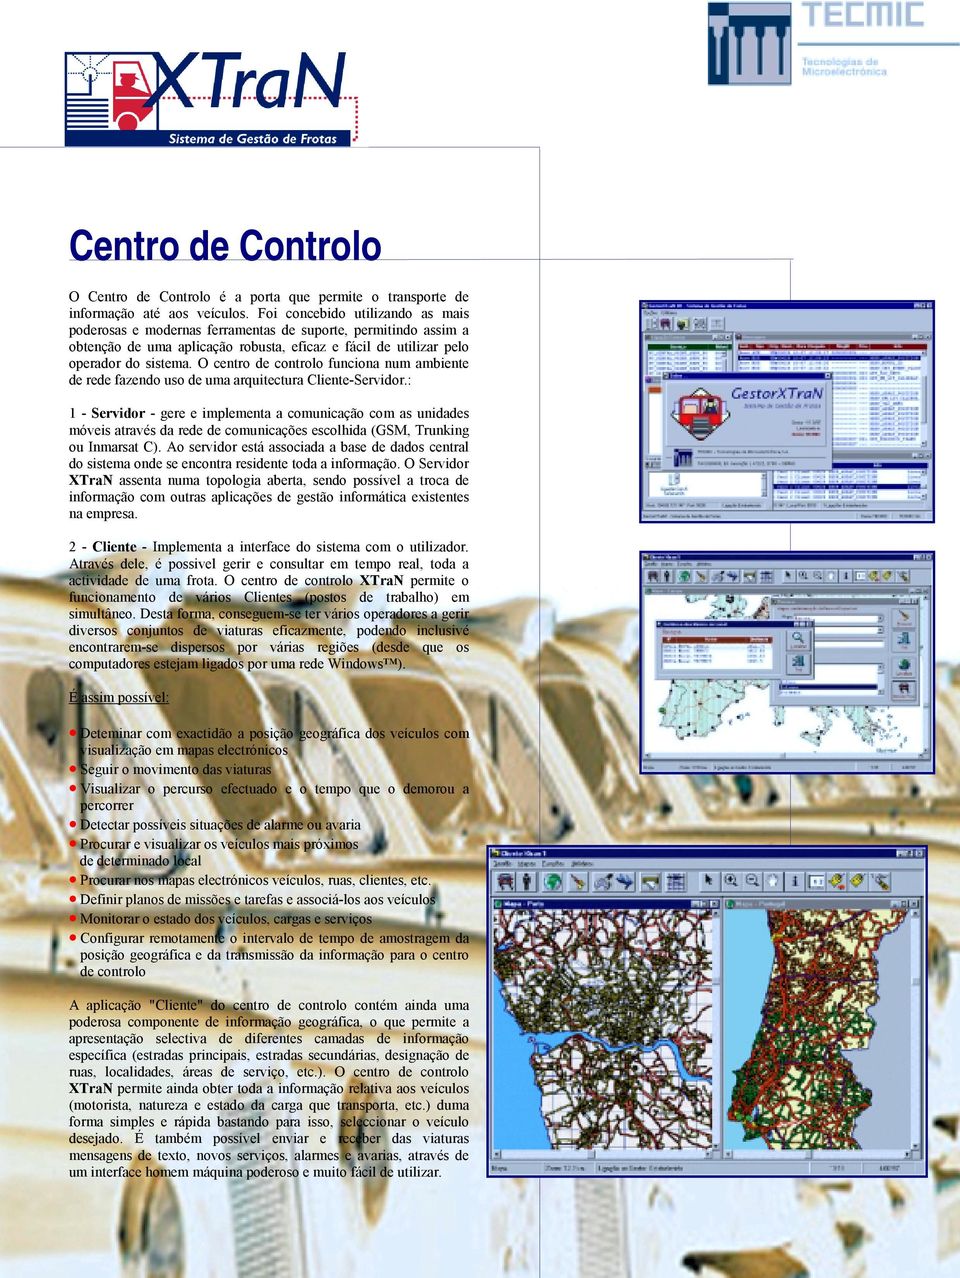 O centro de controlo funciona num ambiente de rede fazendo uso de uma arquitectura Cliente-Servidor.